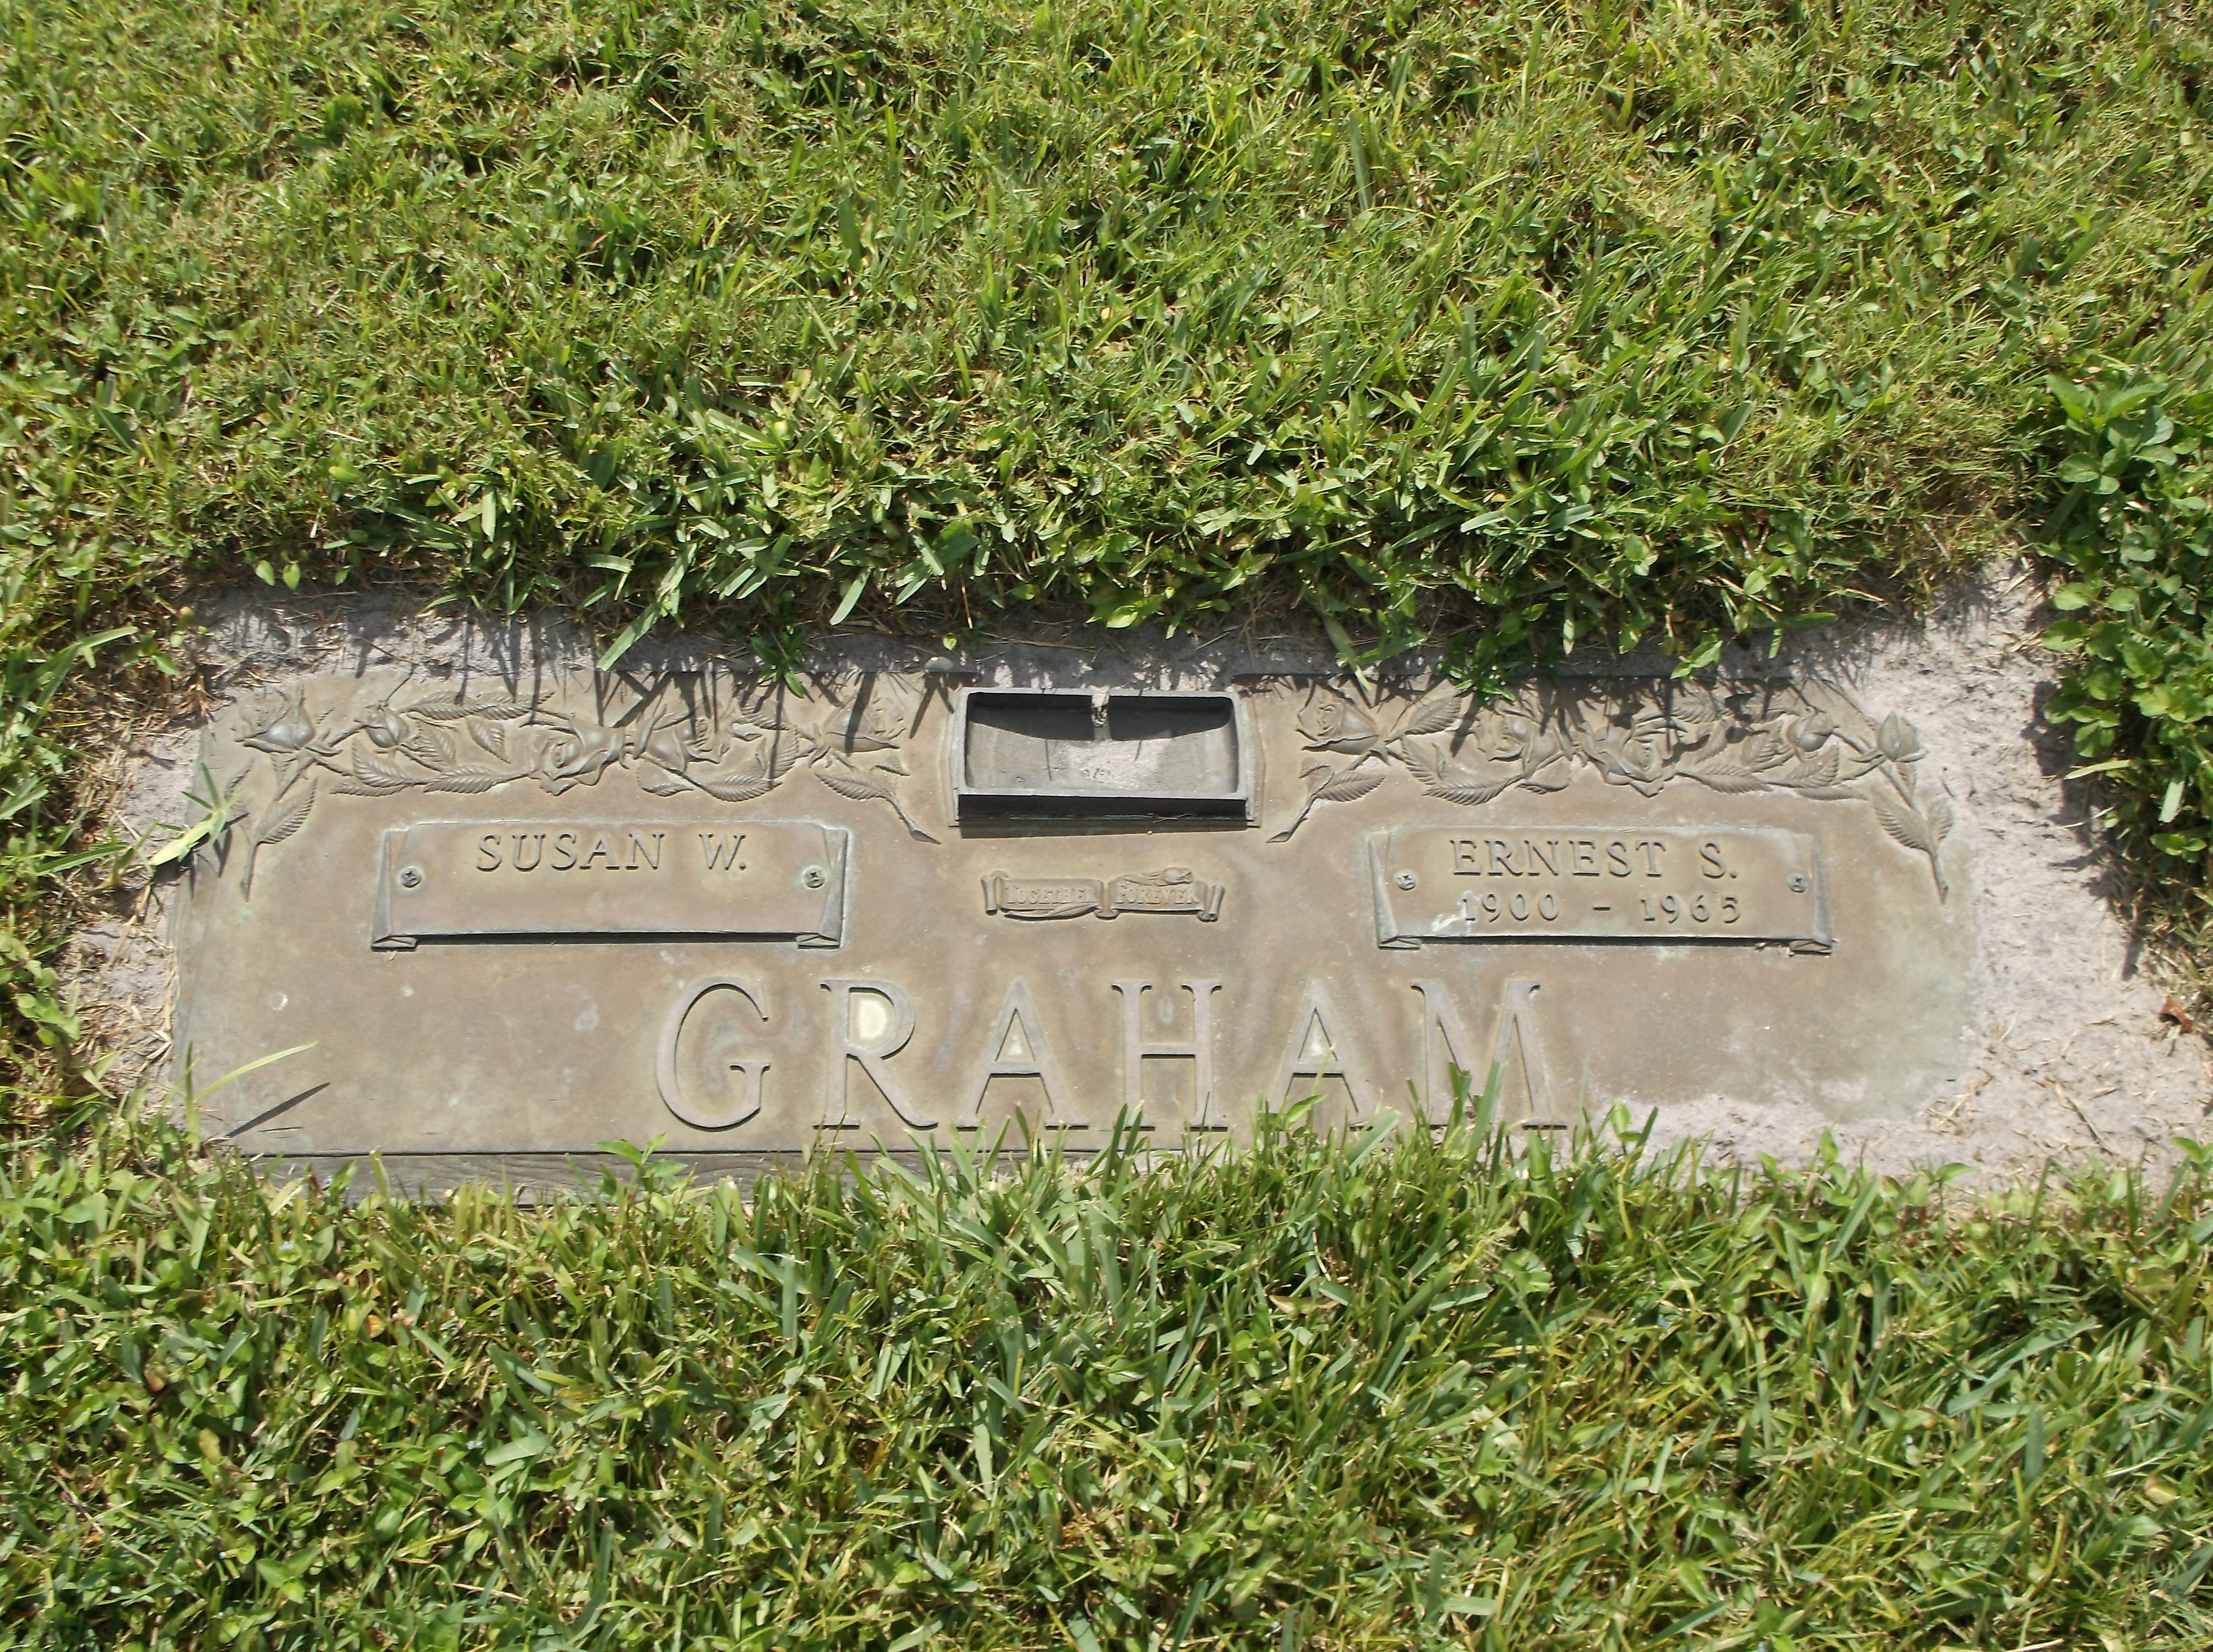 Ernest S Graham